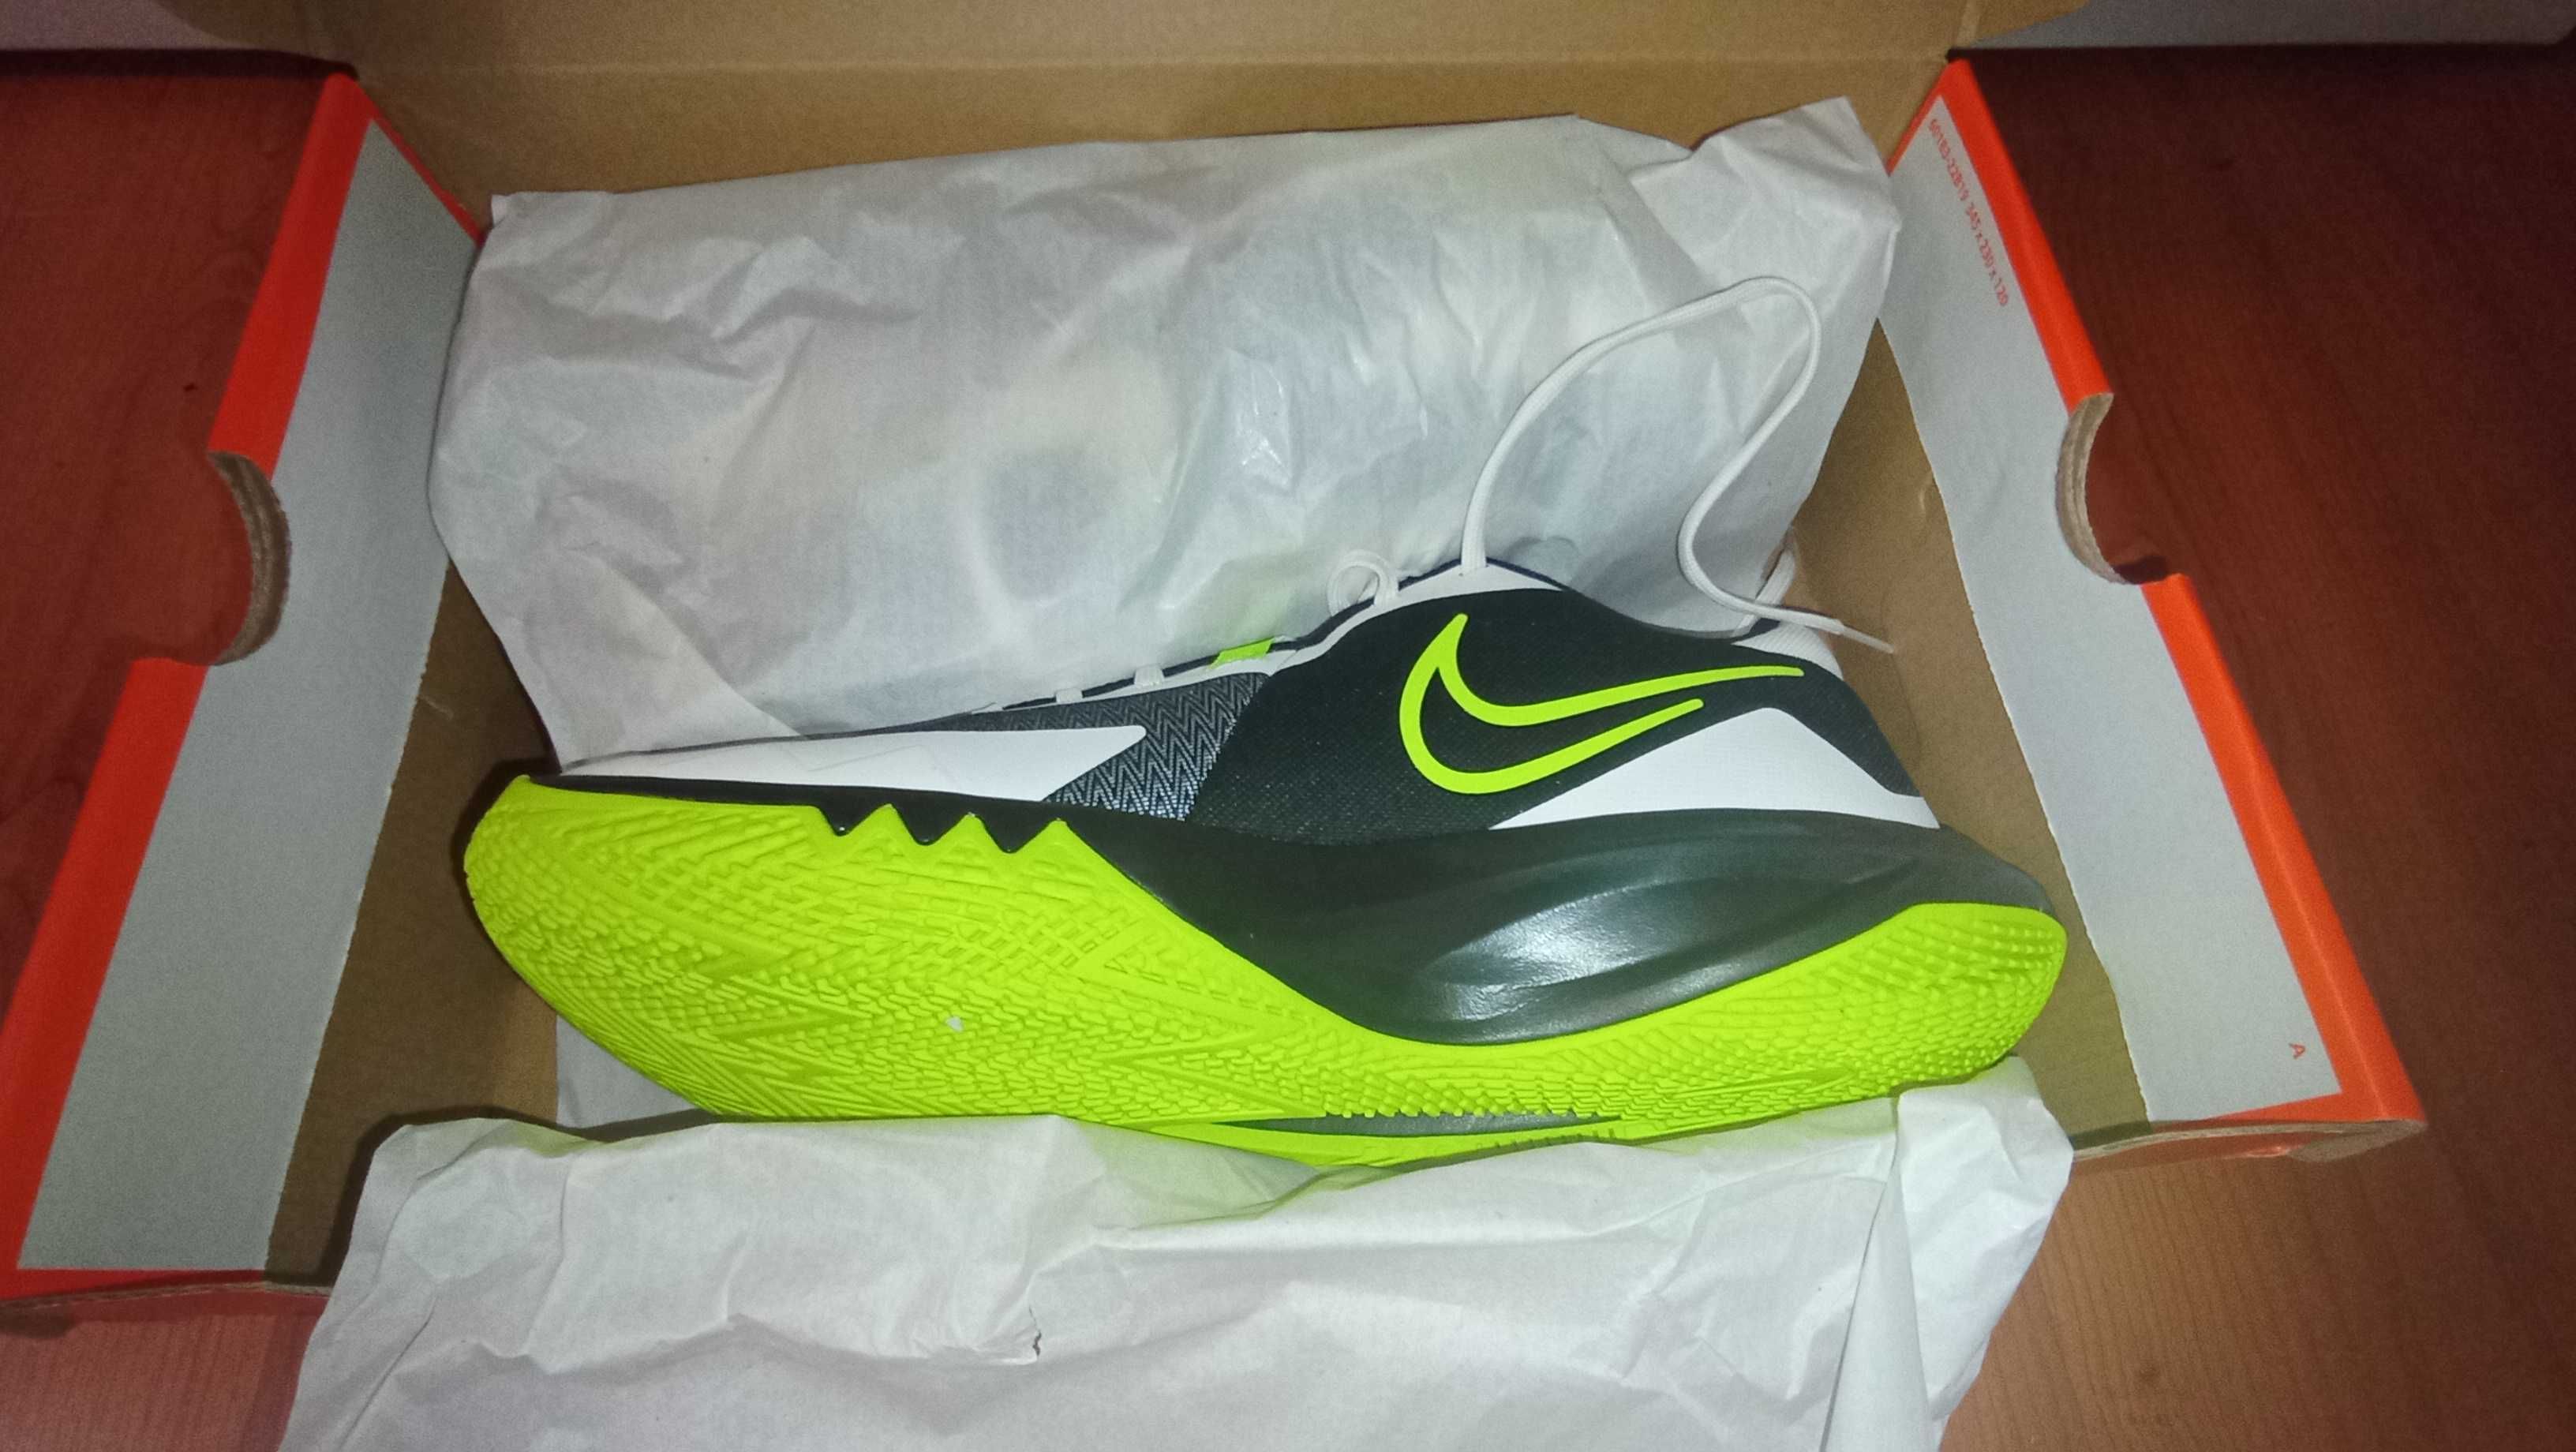 Sapatilhas de basquetebol Nike Precision 6 novas na caixa